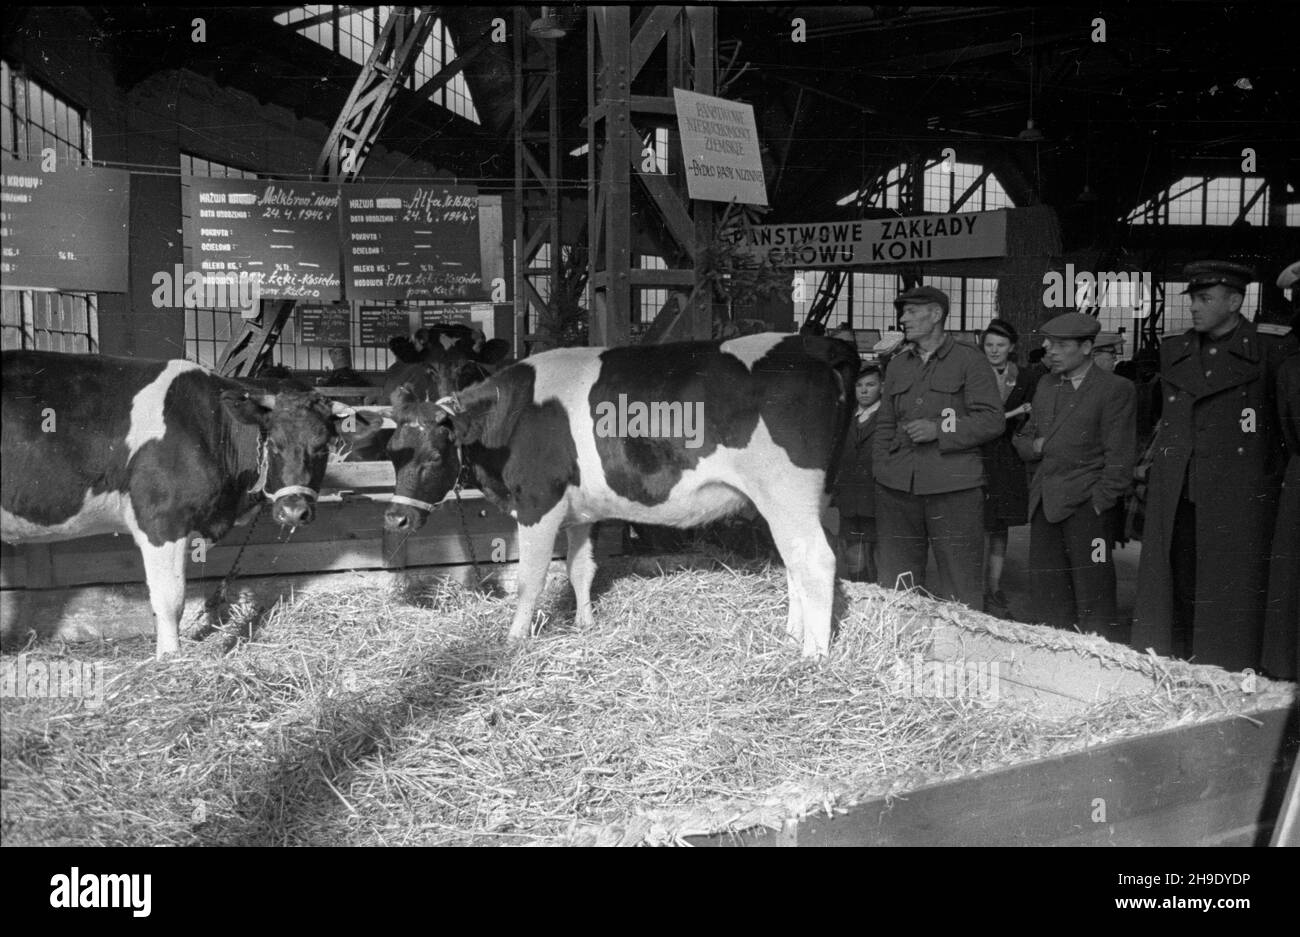 Poznañ, 1947-10. Ogólnokrajowa Wystawa Rolniczo-Ogrodnicza, w dniach 11-29 paŸdziernika, na terenie Miêdzynarodowych Targów Poznañskich. Nz. byd³o rasy nizinnej. mb/gr  PAP    Dok³adny dzieñ wydarzenia nieustalony.      Poznan, Oct. 1947. National Agricultural Exhibition held at the premises of Poznan International Fair on October 11 to 29. Pictured: farm animals - cows.   mb/gr  PAP Stock Photo